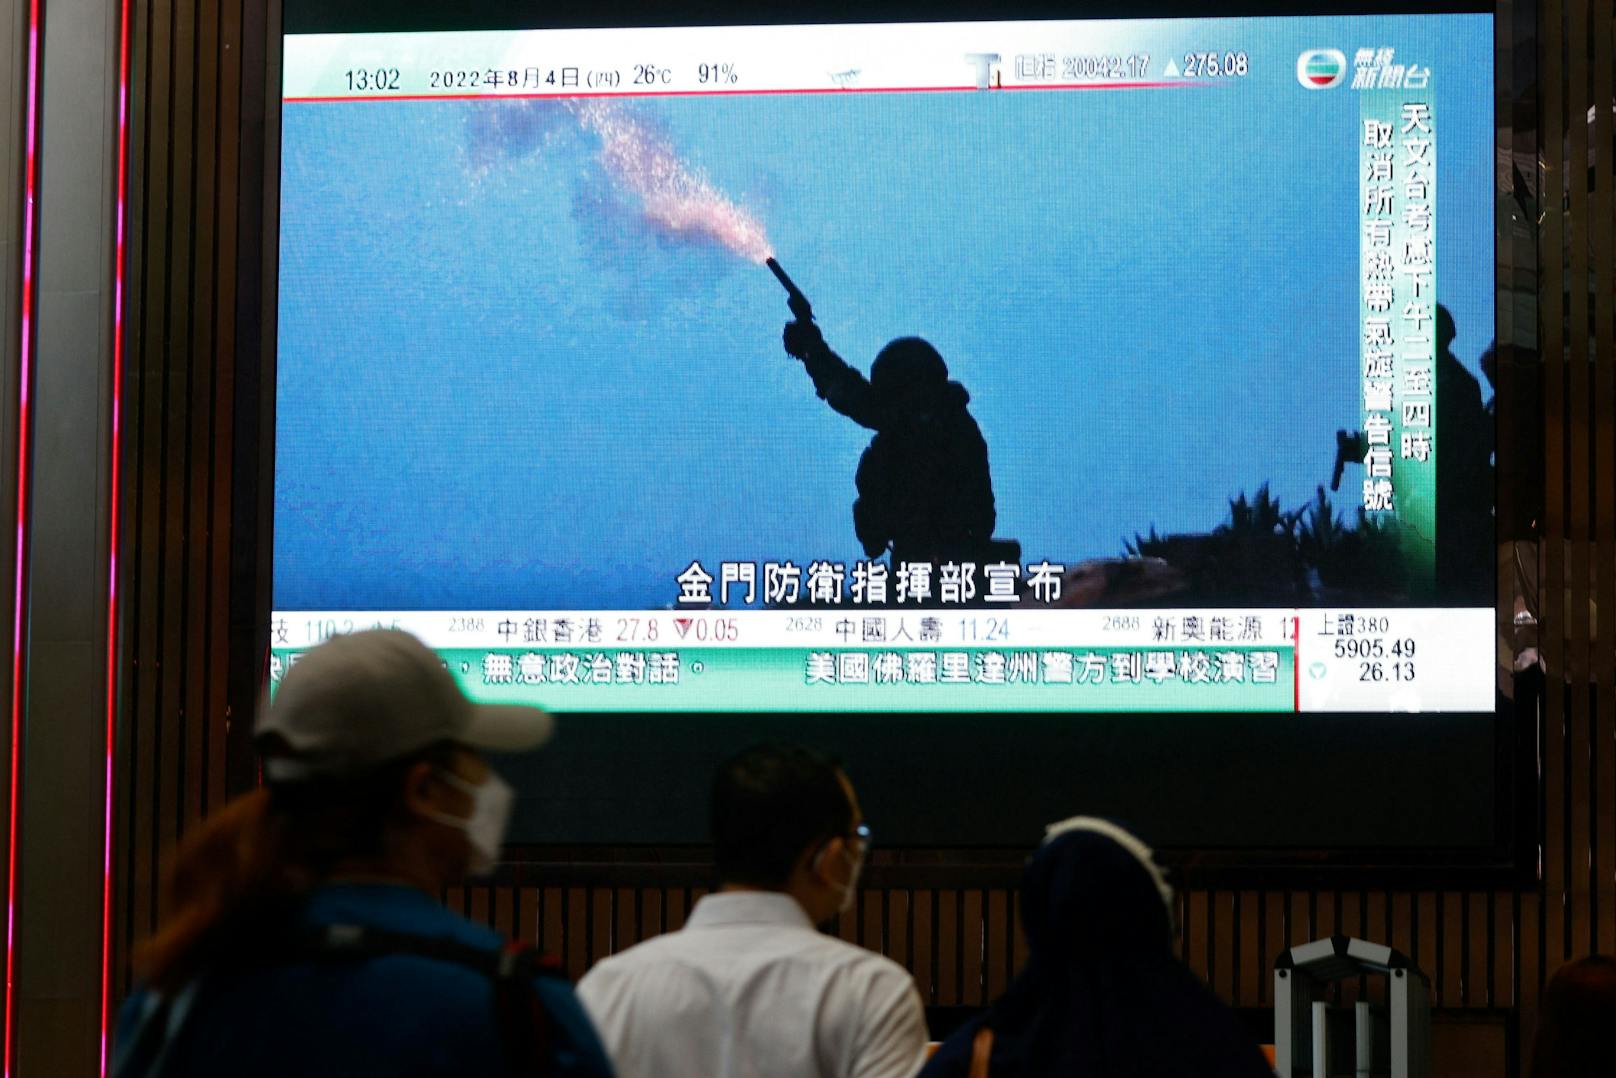 China hat seine angekündigten Militärmanöver nahe Taiwan nach Angaben des chinesischen Staatsfernsehens begonnen.